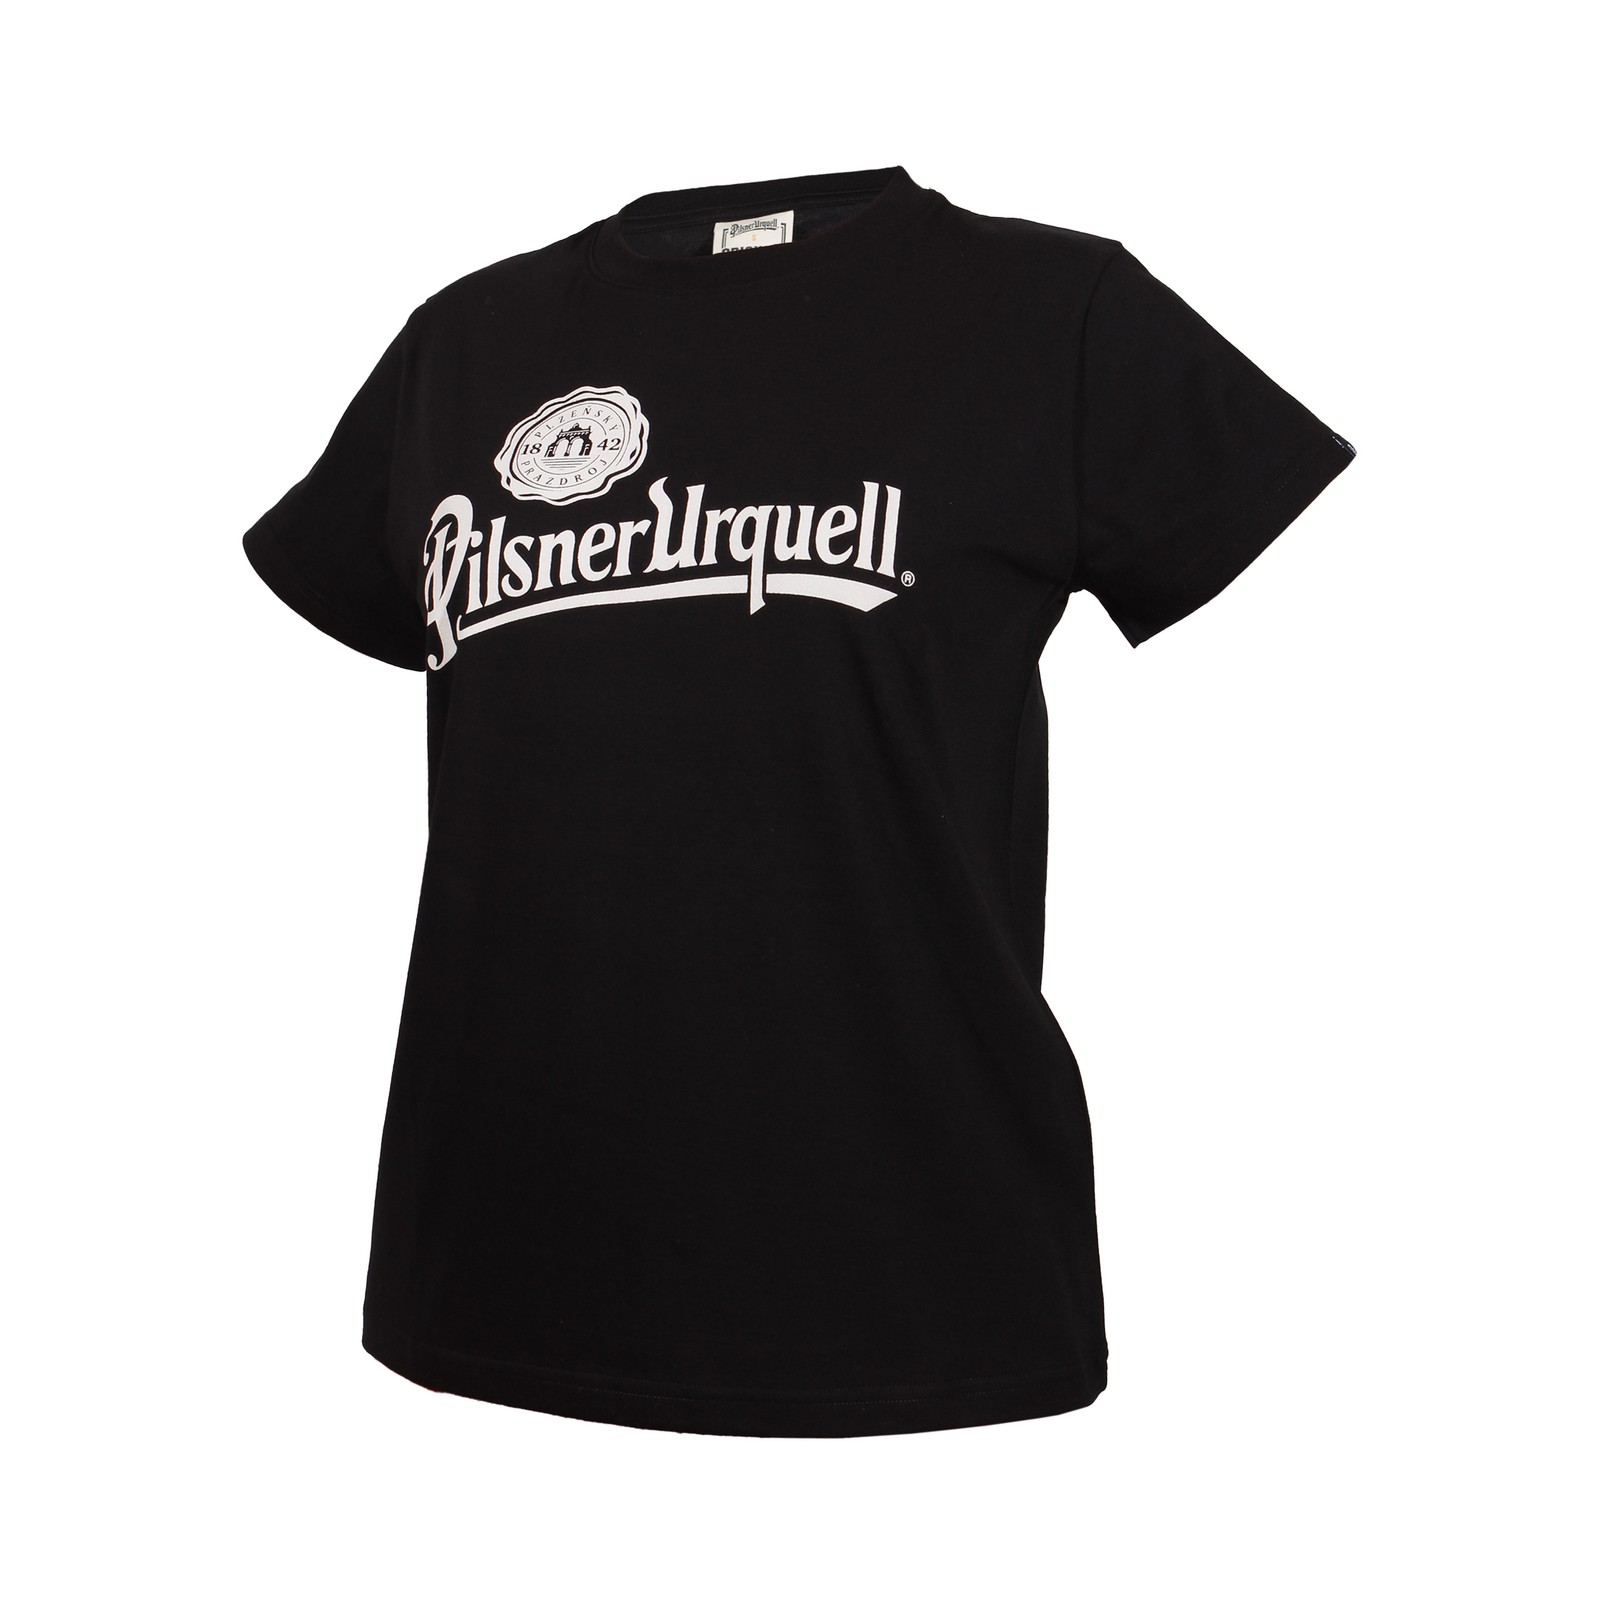 Women's black T-shirt Pilsner Urquell logo